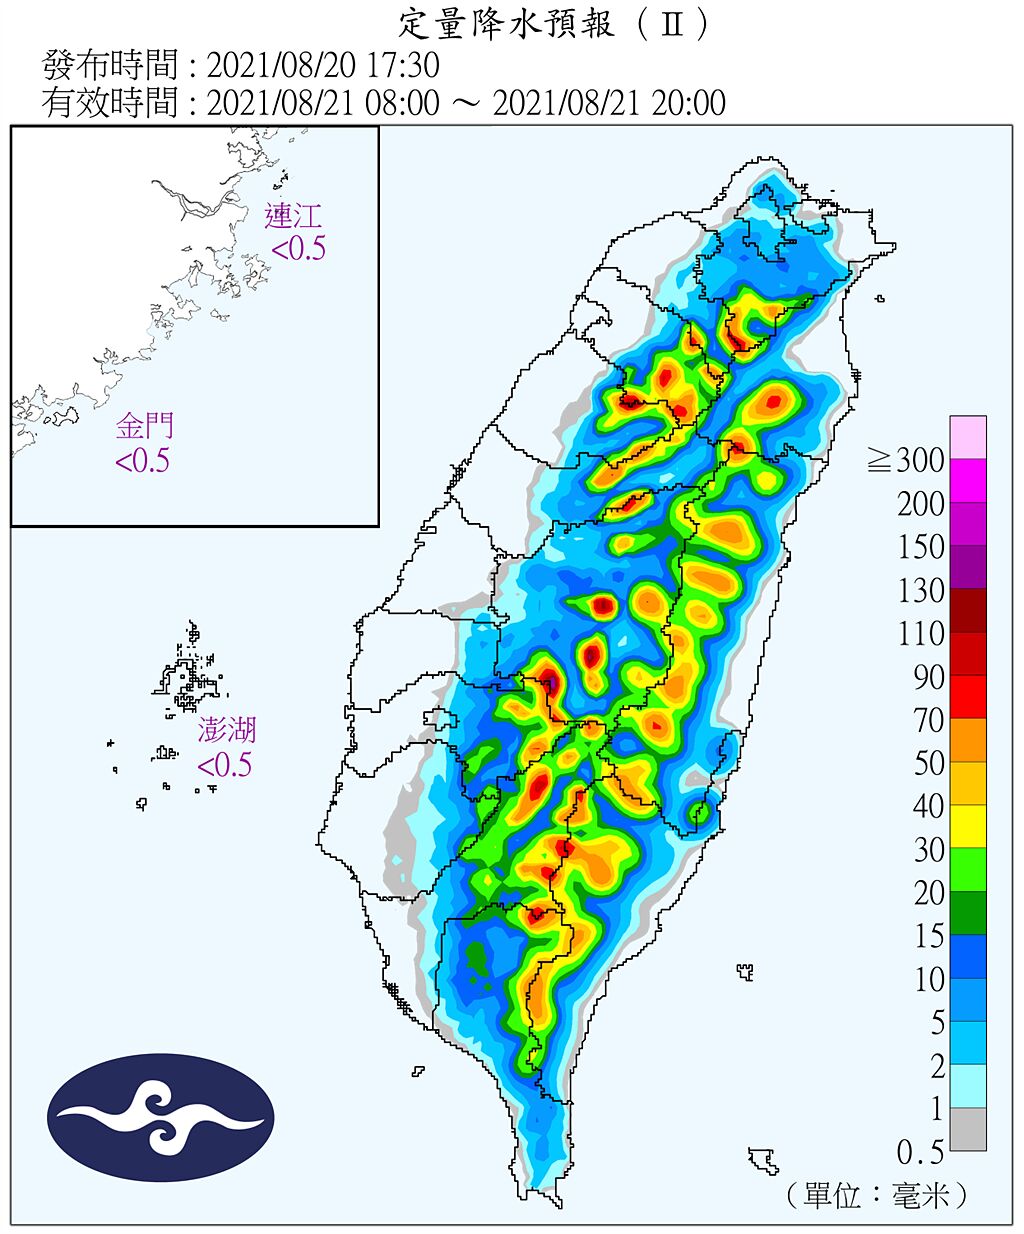 氣象局指出，明天各地降雨範圍再減少，不過山區及大台北盆地仍有局部大雨發生的機率。(氣象局提供)